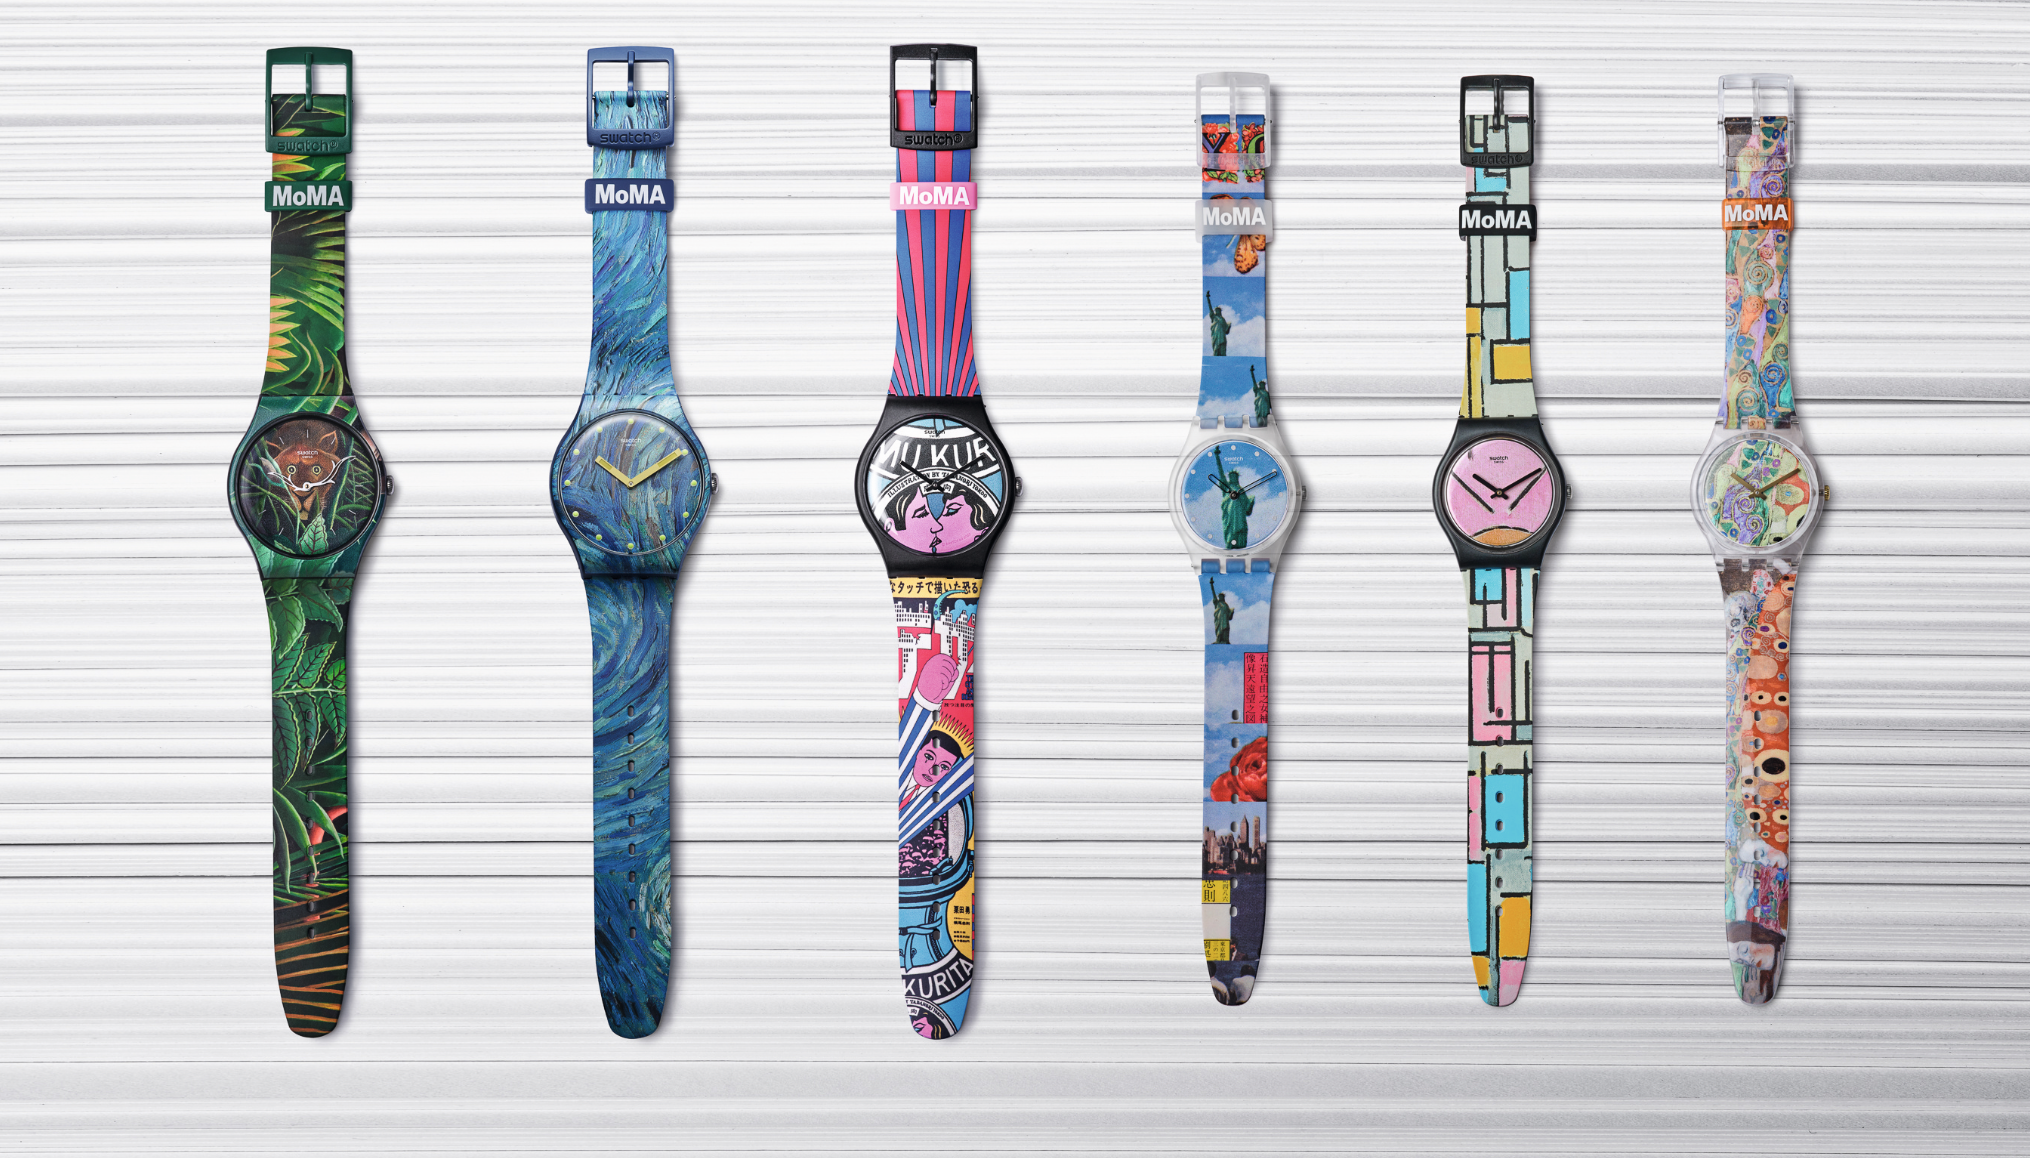 Nuevo objeto de deseo: la colección de relojes artísticos Swatch X MoMa